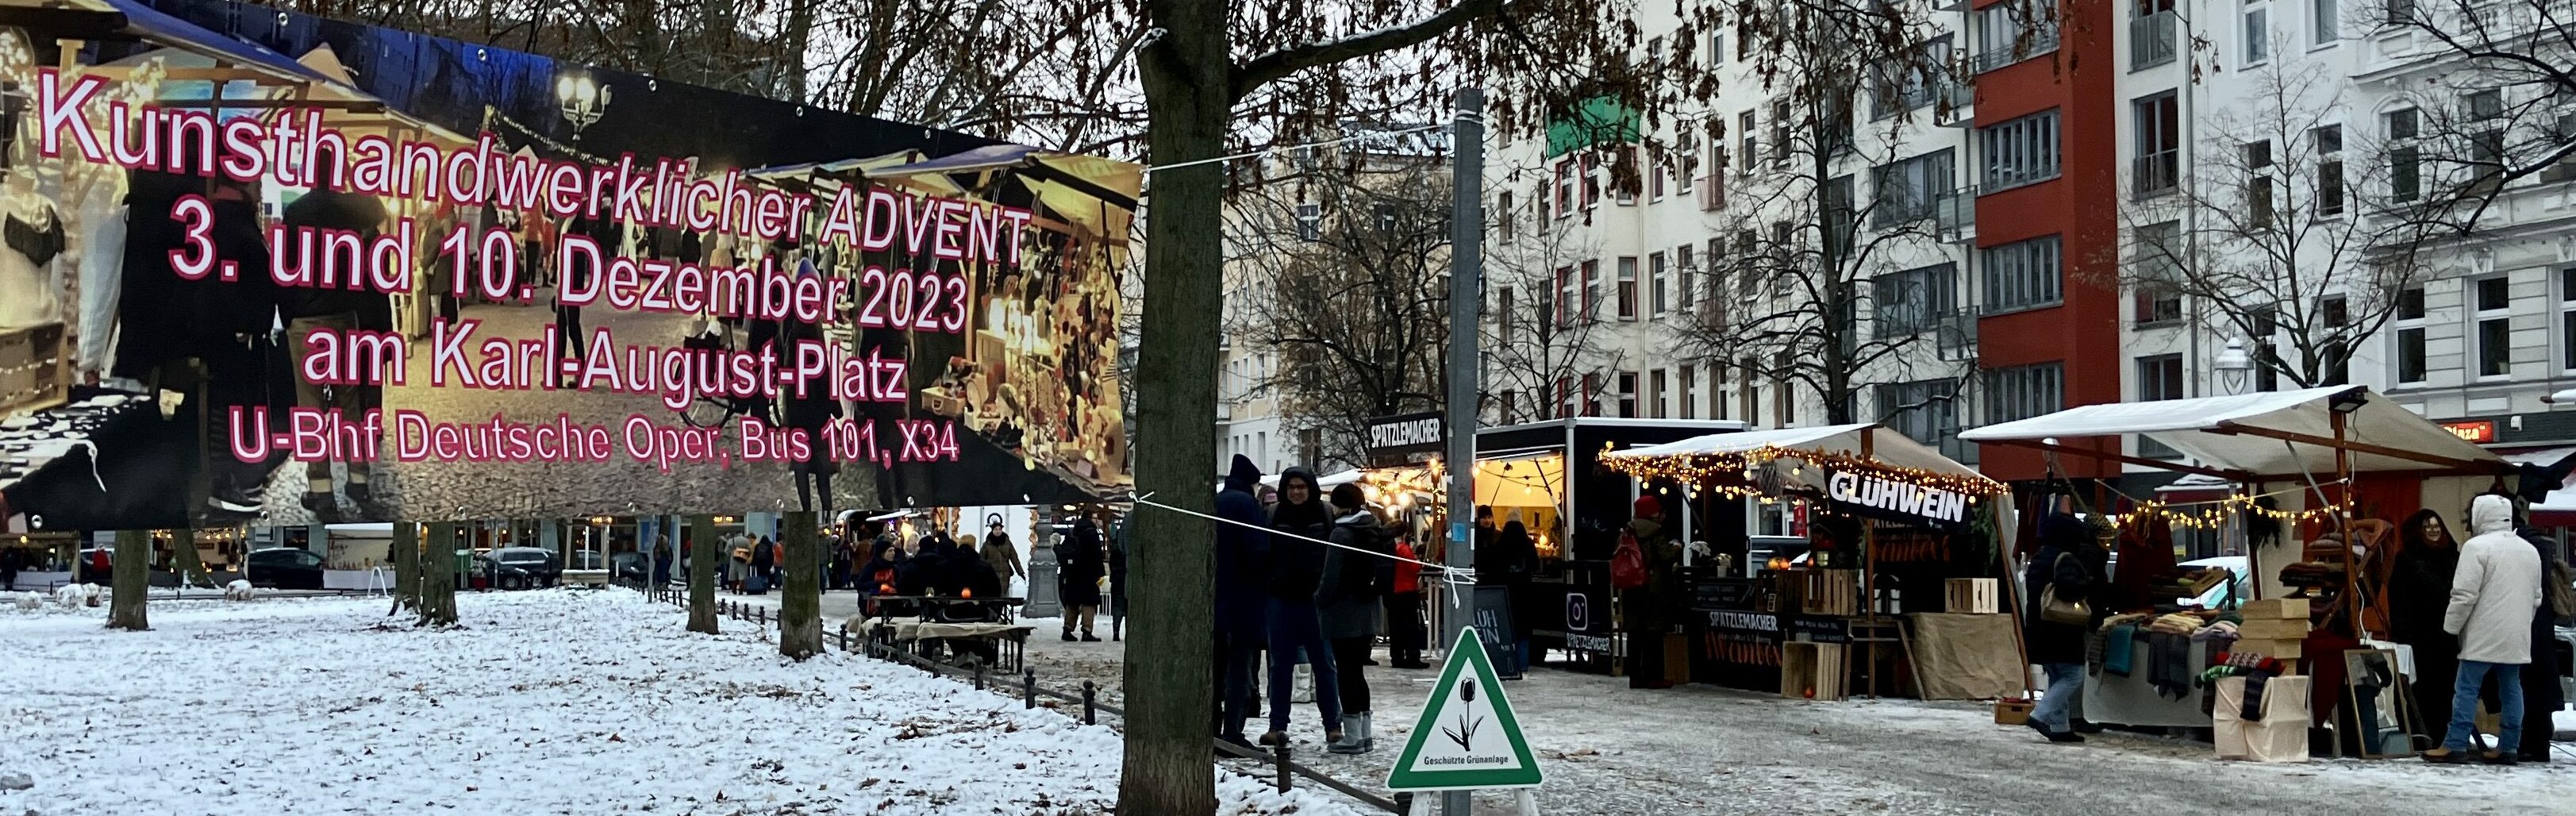 Das Transparent zum Kunsthandwerklichen Advents-Weihnachtsmarkt am 3. und 10. Dezember 2023 auf dem Karl-August-Platz sowie ein paar Stände wie Glühwein und Spätzle.